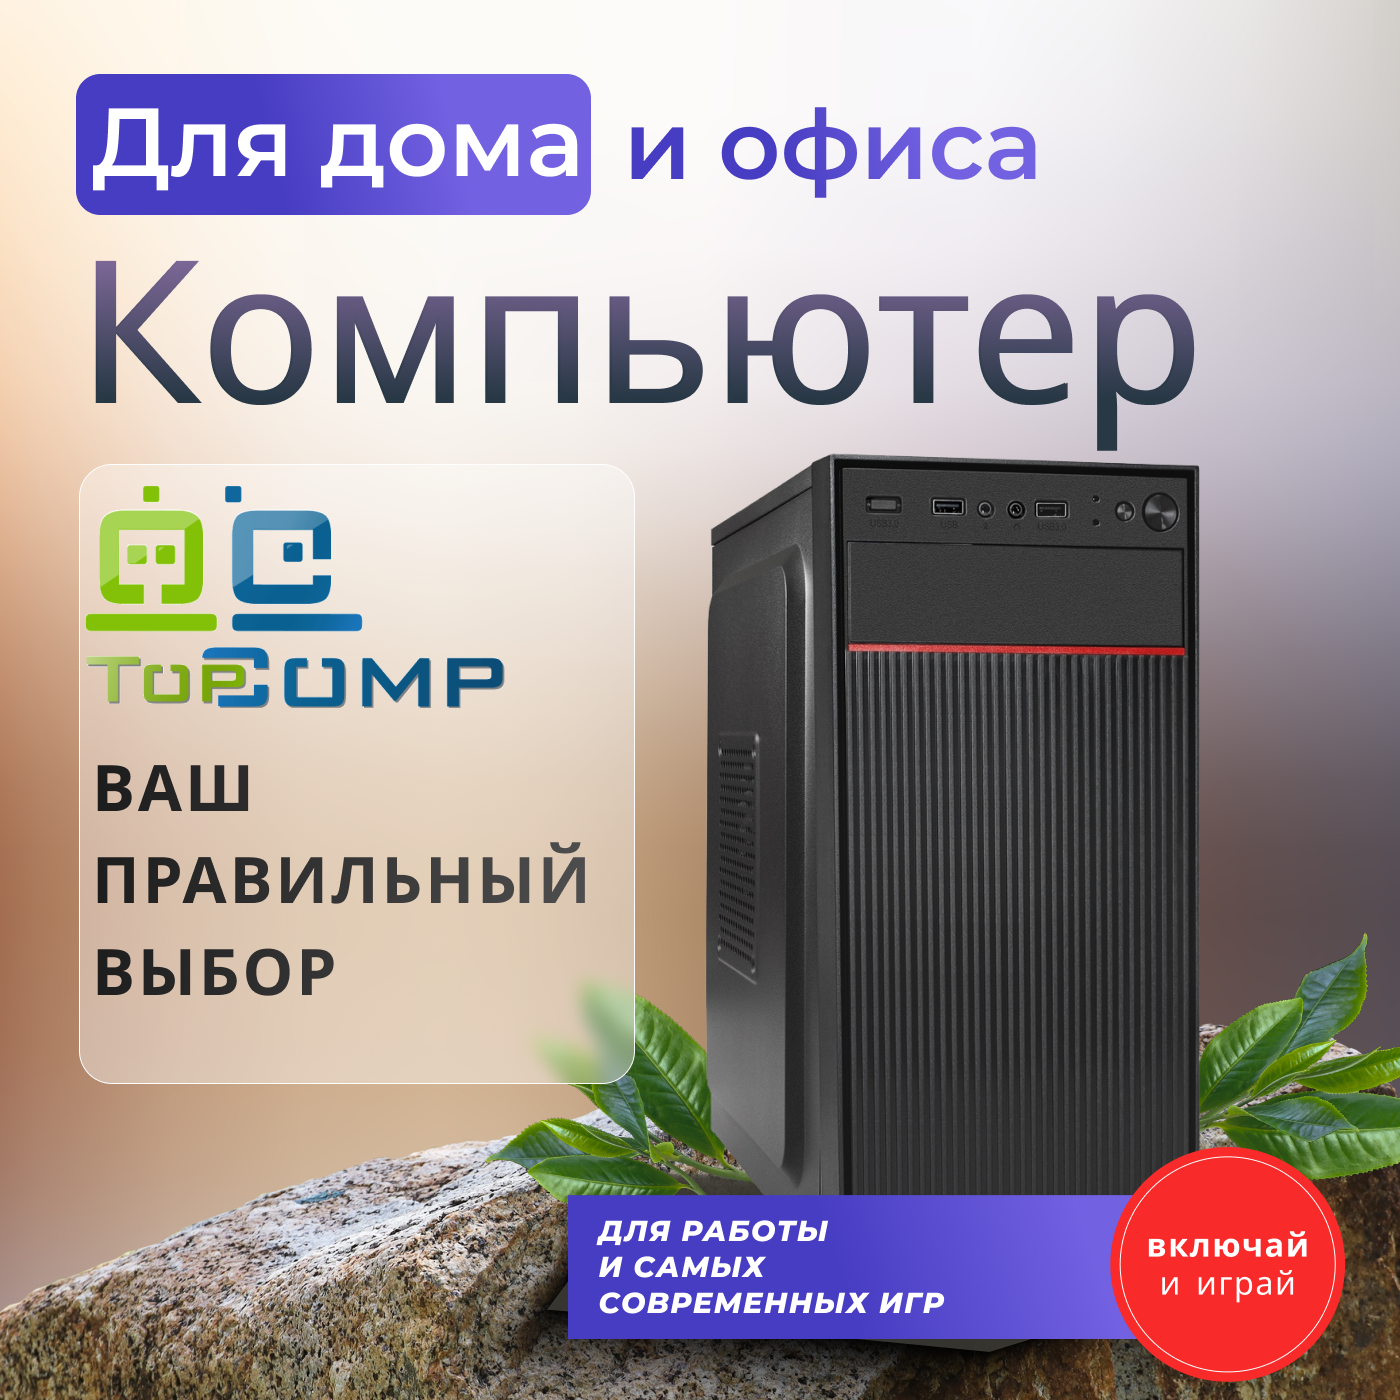 ПК офисный TopComp WO 31988927 (Intel Core i7 2600 3.4 ГГц, RAM 16 Гб, 1120 Гб SSD|HDD, NVIDIA GeForce GT 210 1 Гб, Без ОС)